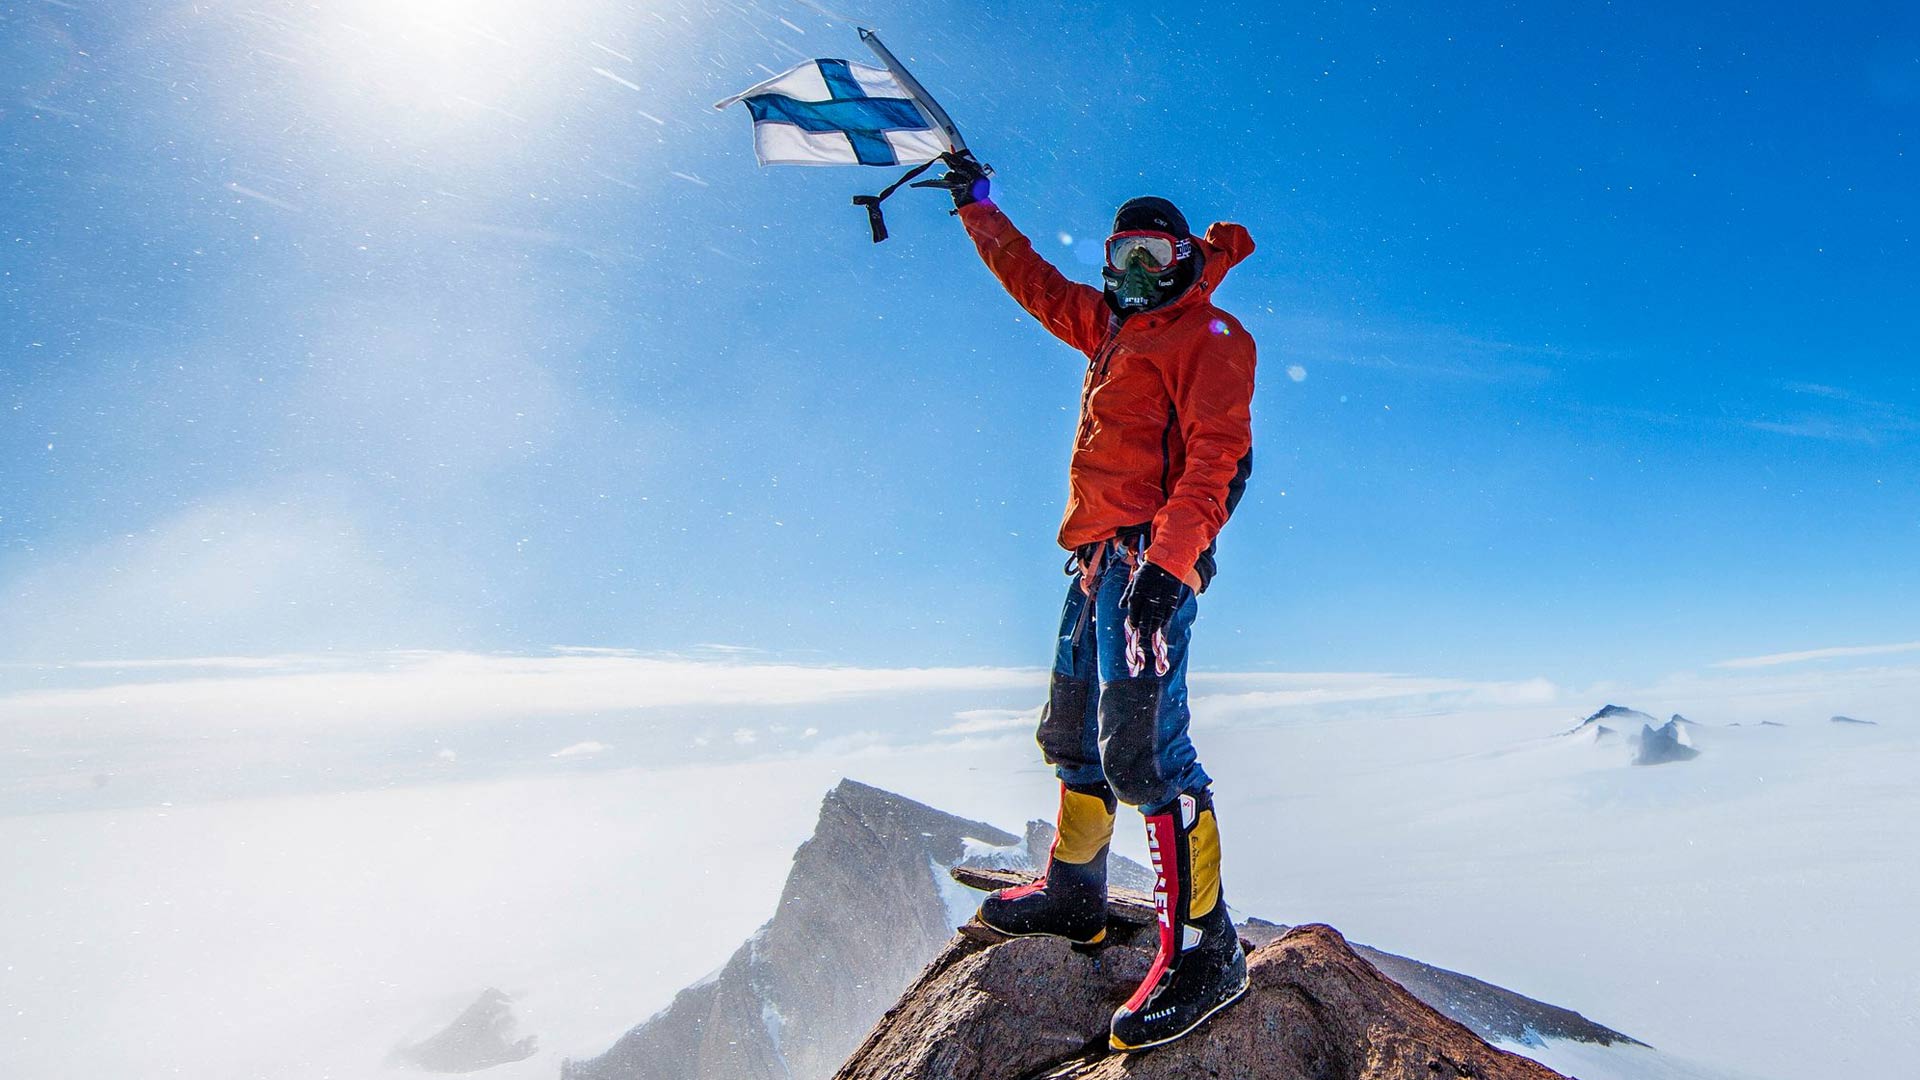 Pata Degerman on nimennyt valloittamiaan vuoria Suomen mukaan. Esimerkiksi Etelämantereella on Veikka Gustafssonin kanssa vallatut Mount Sisu ja Mount Finland, joille he tekivät yhdessä ensinousut.